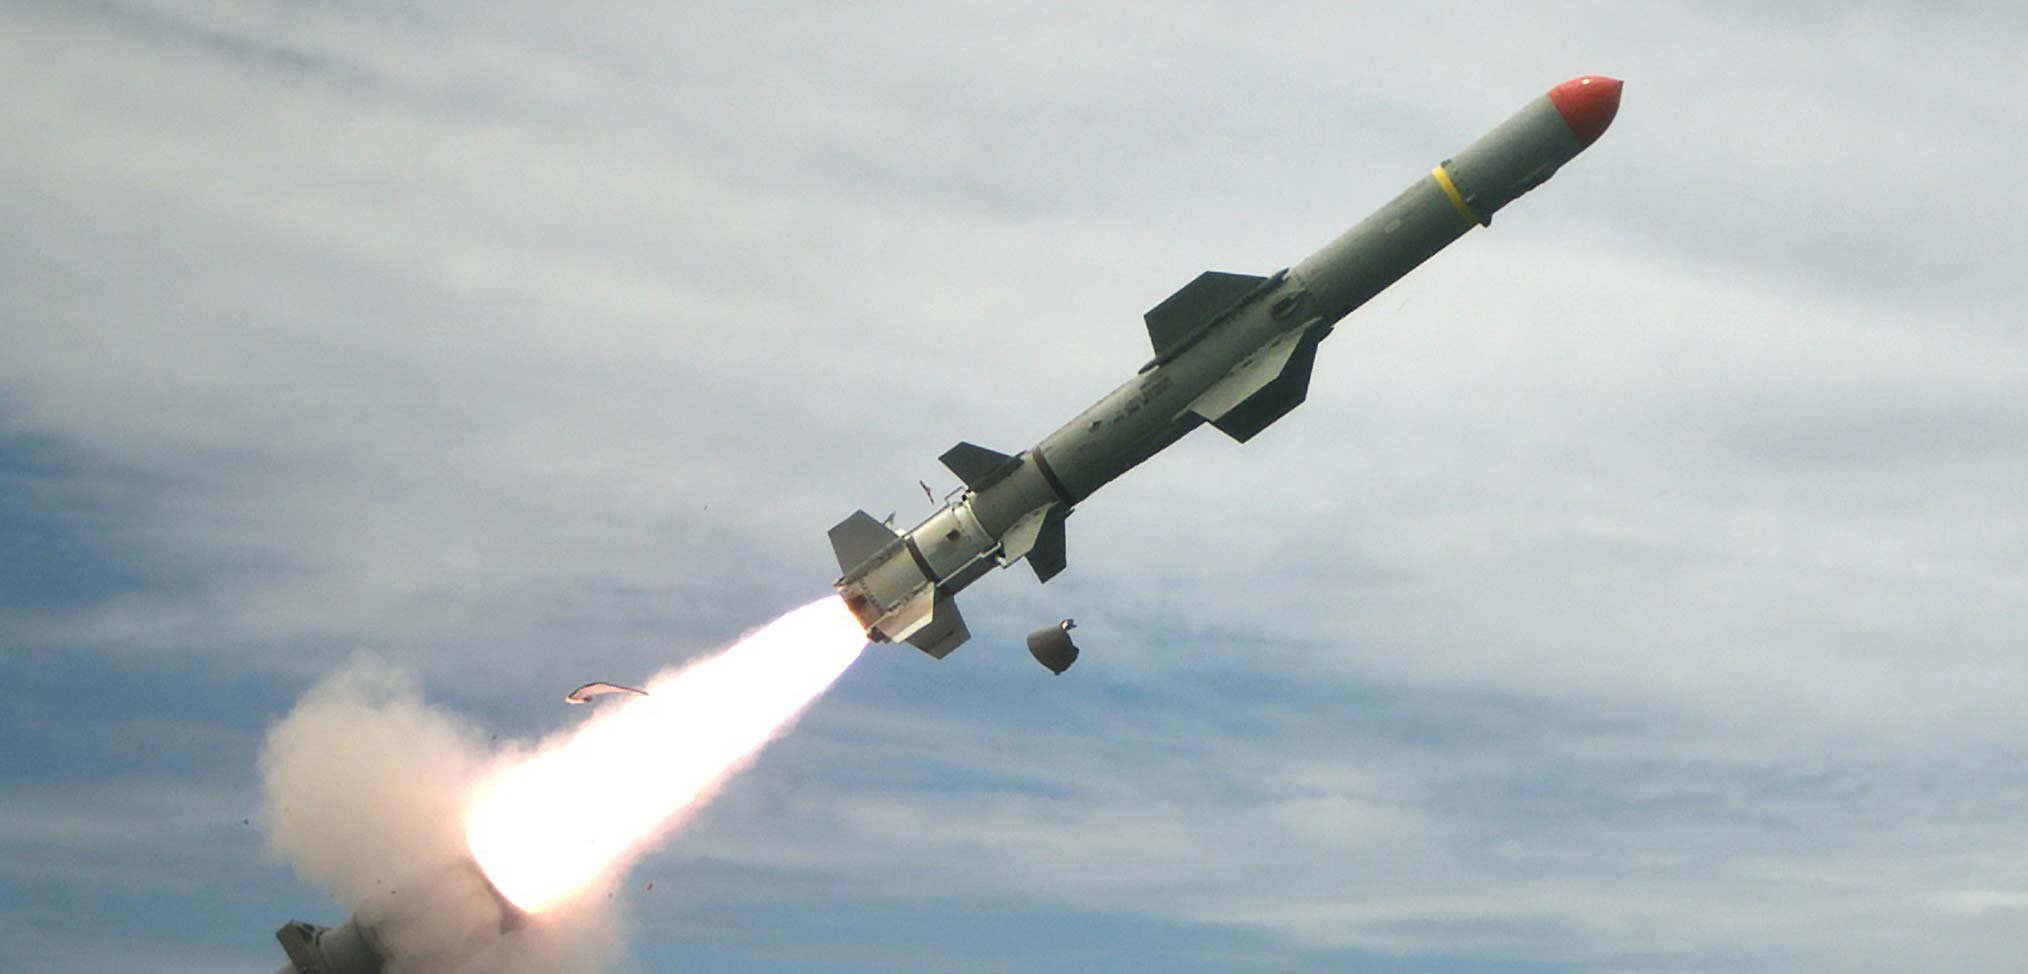  Ucraina îşi consolidează apărarea de coastă cu rachete antinavă americane de tip Harpoon